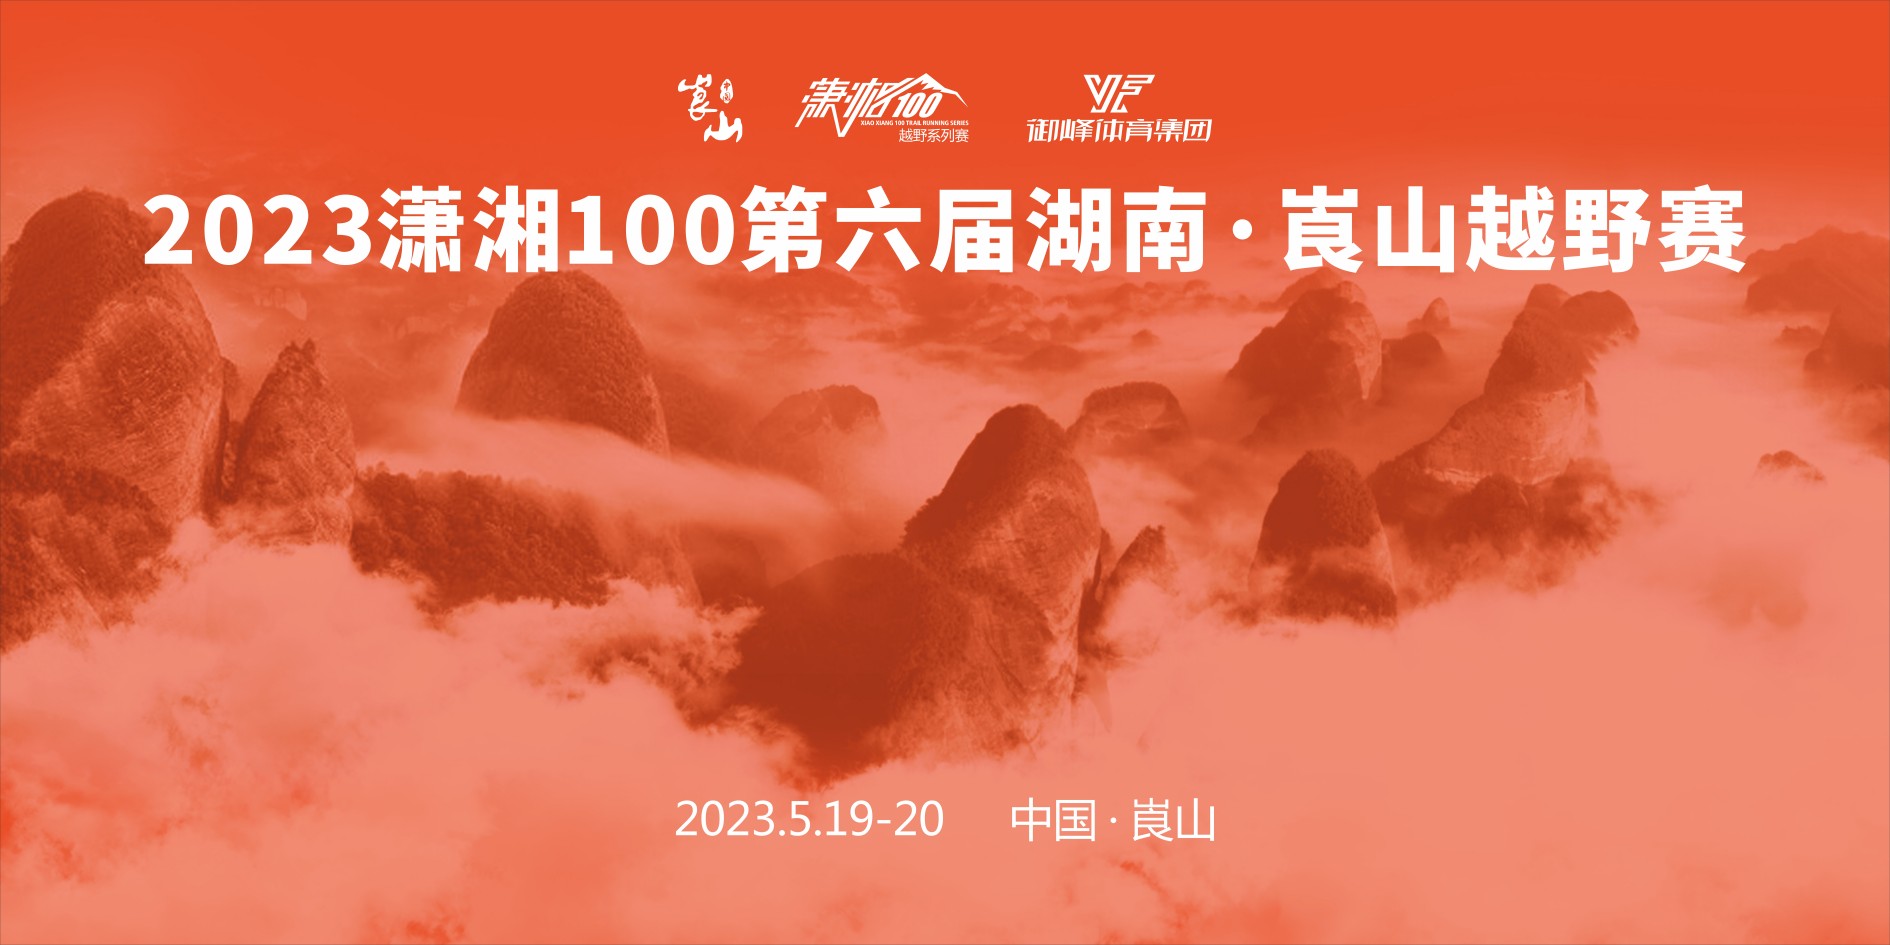 2023潇湘100第六届湖南·崀山越野赛